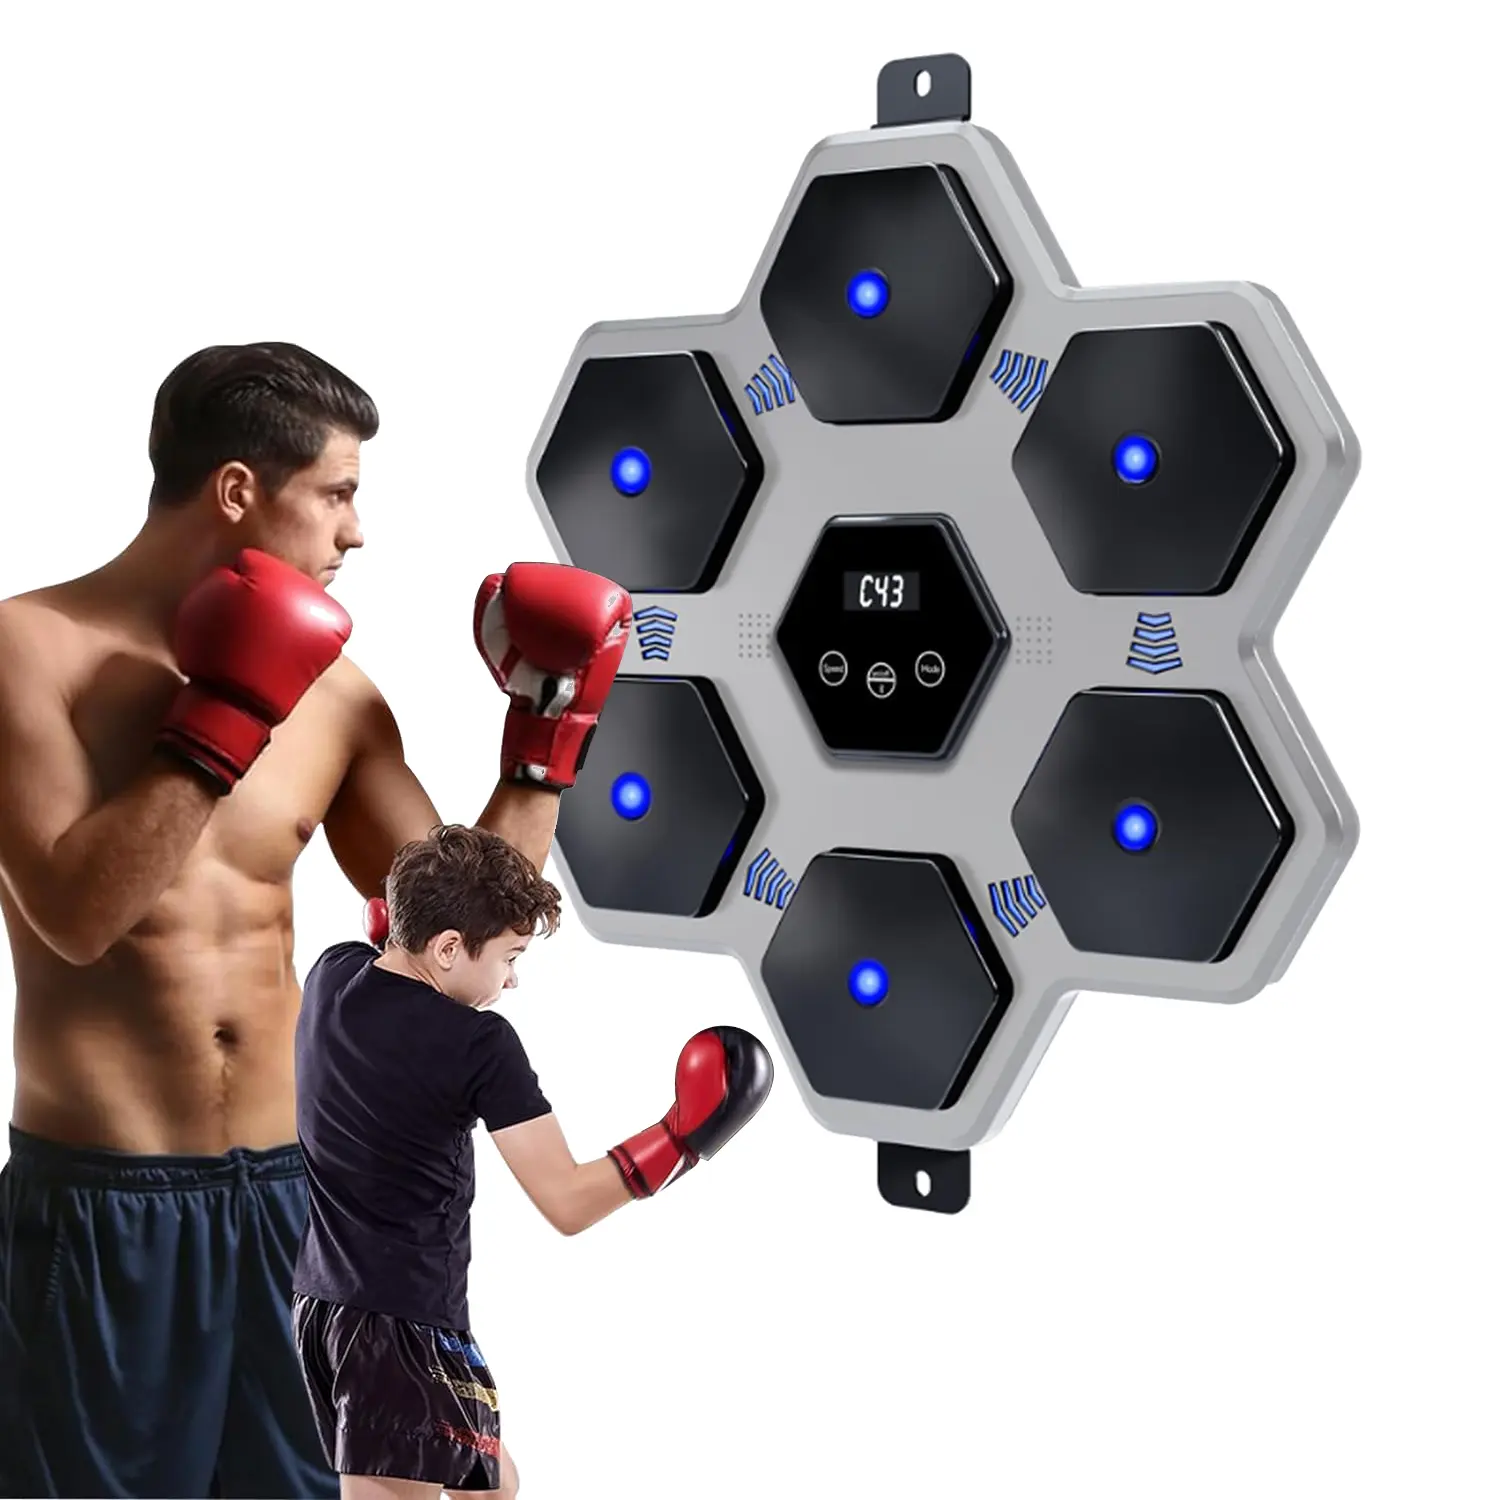 RS bersaglio di boxe elettronico manichino per allenamento Fitness muro bersaglio luce musica intelligente macchina da boxe per adulti